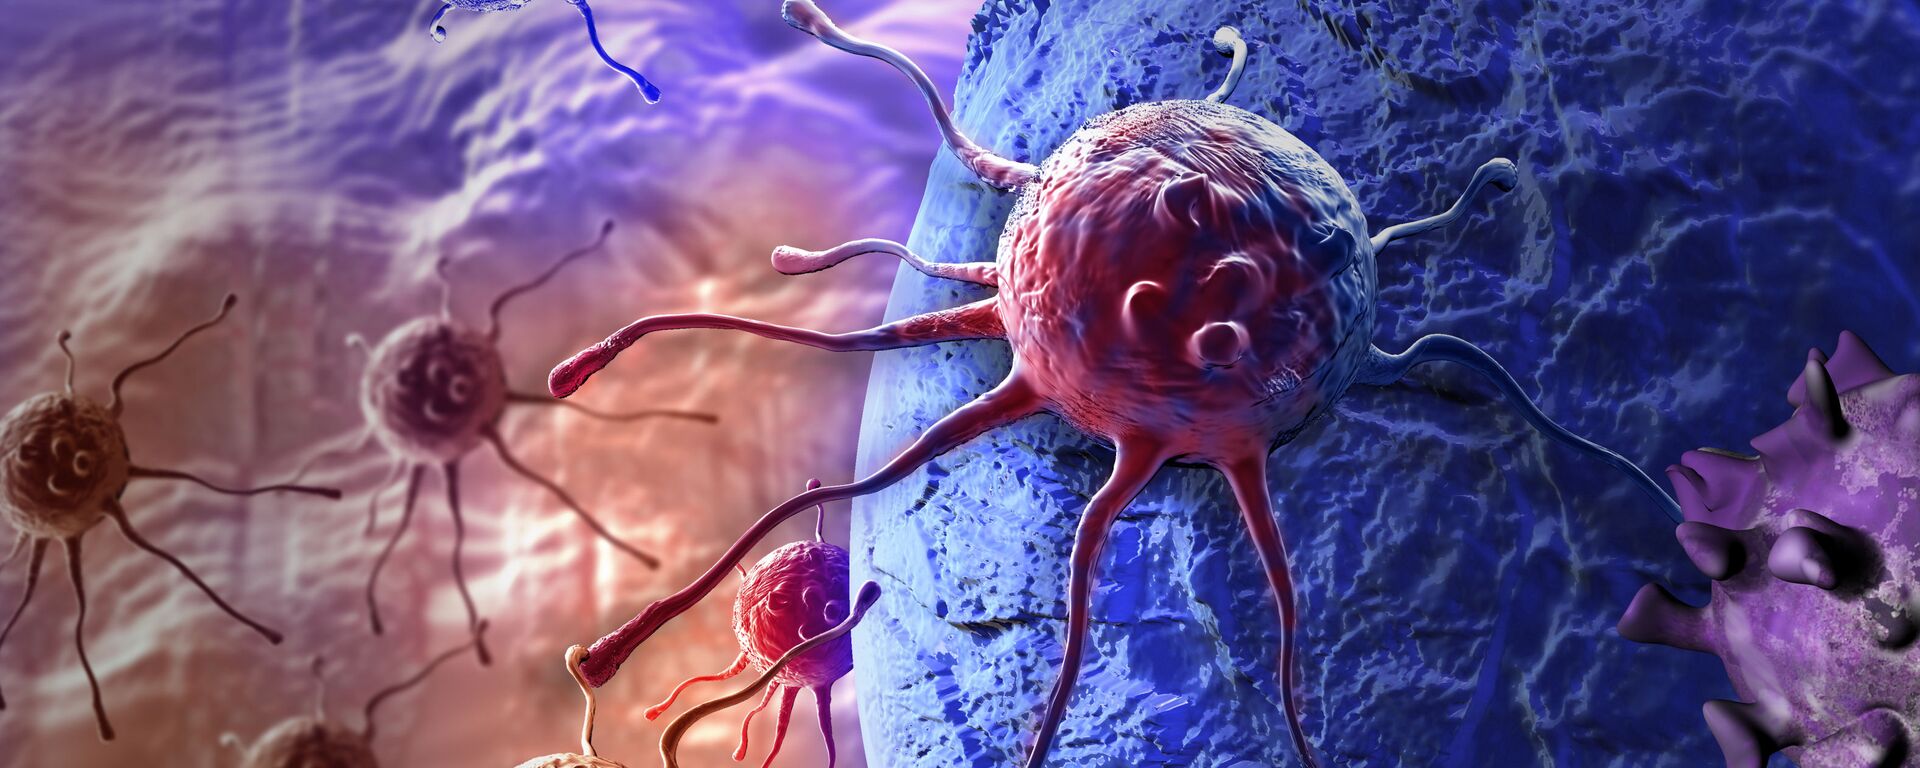 خلايا سرطانية - سبوتنيك عربي, 1920, 20.05.2017